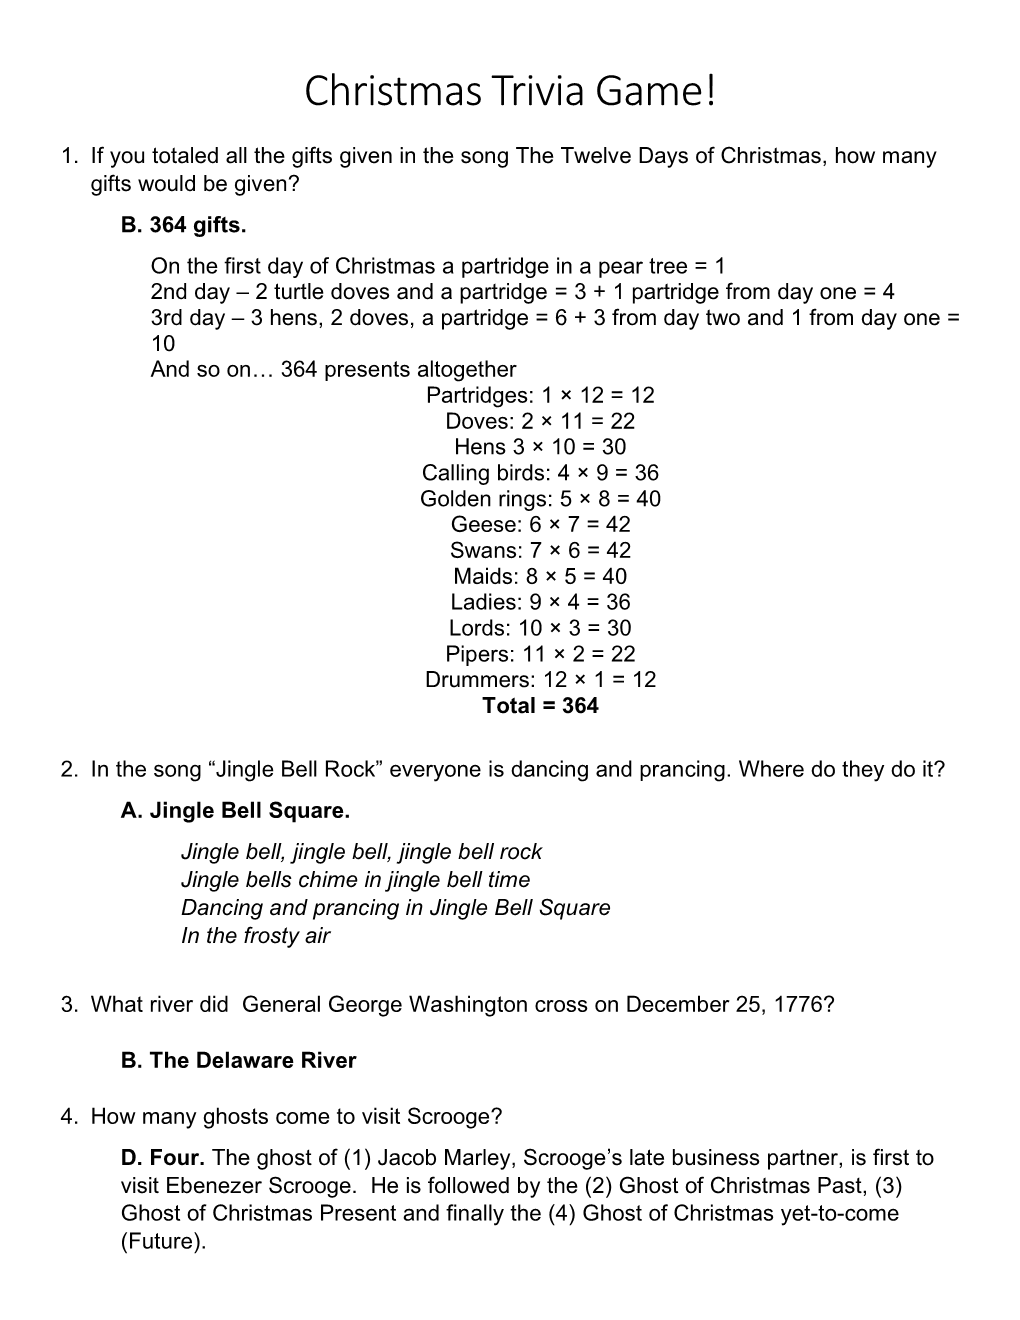 Christmas Trivia Game Answers